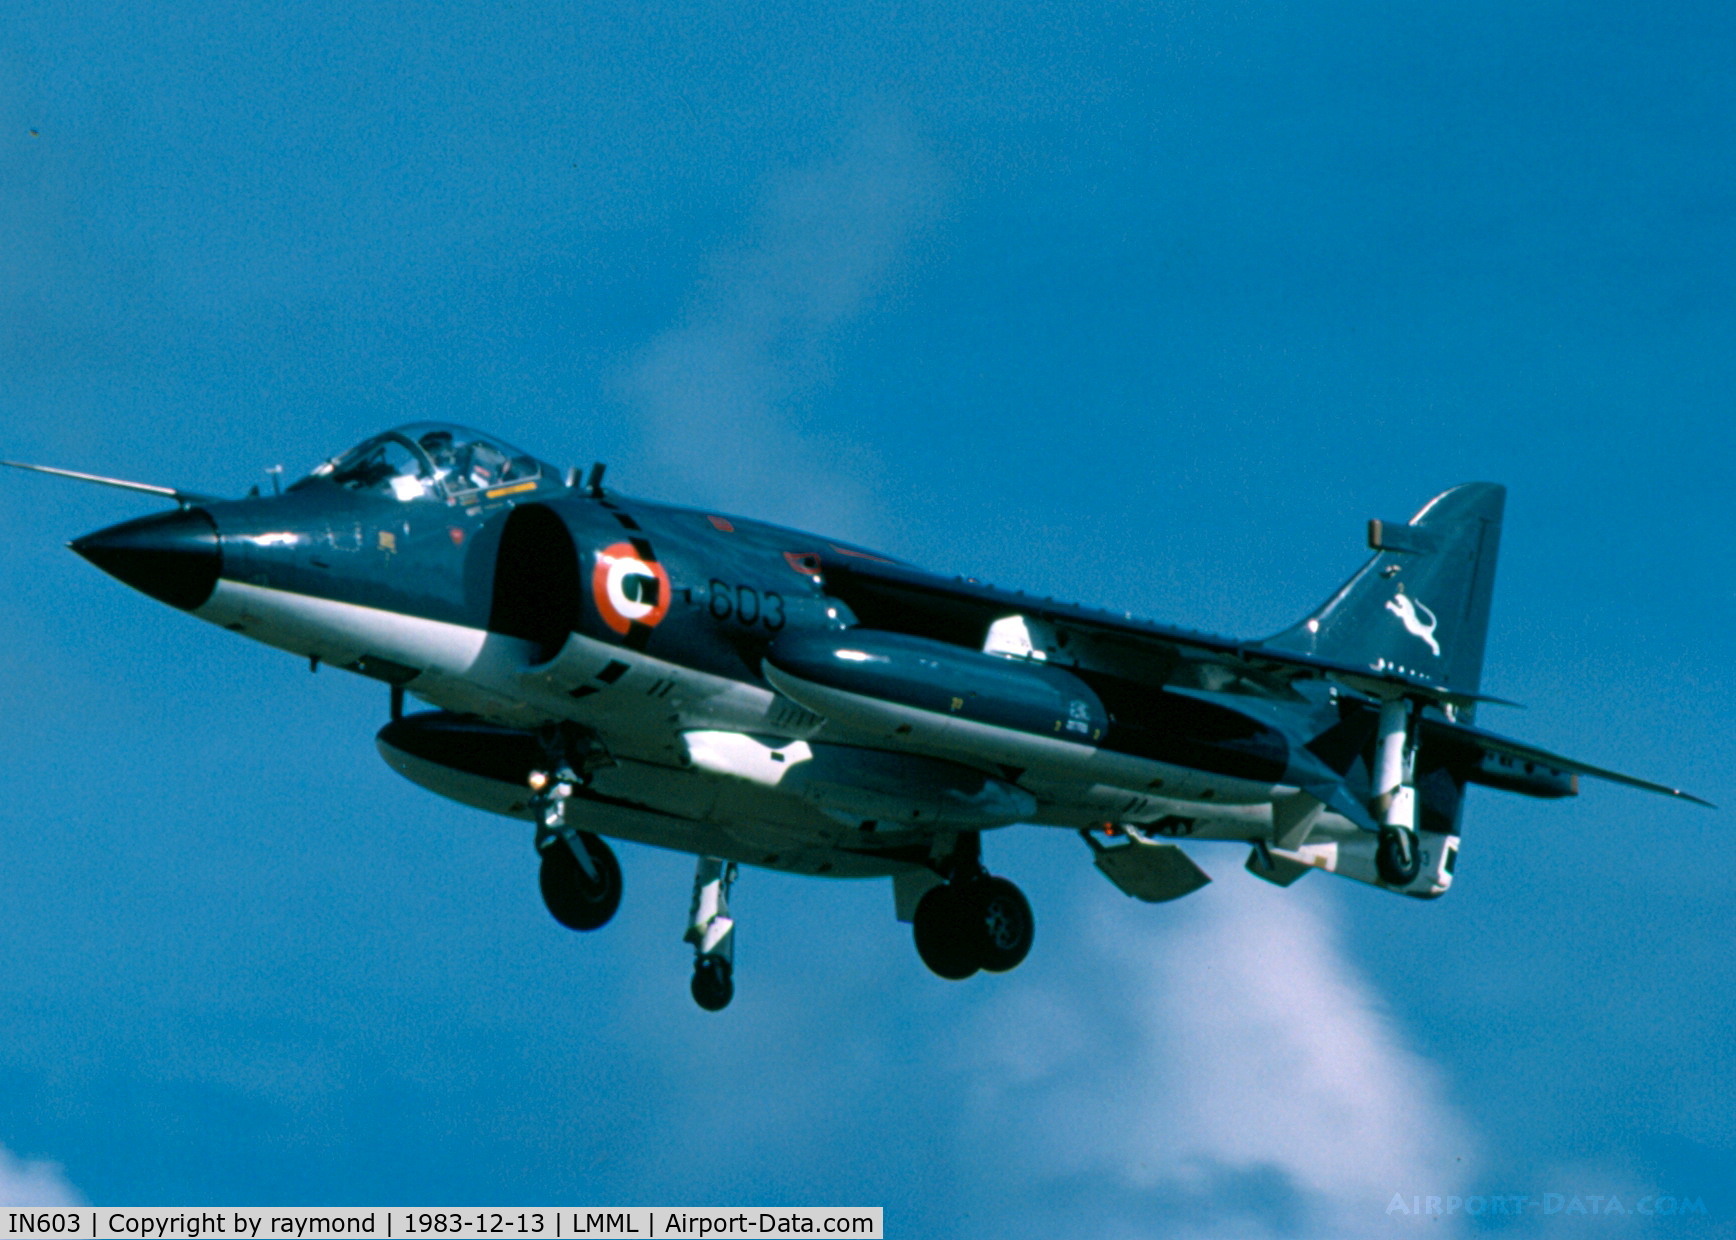 IN603, 1983 British Aerospace Sea Harrier FRS.51 C/N 603, Sea Harrier IN603 Indian Navy